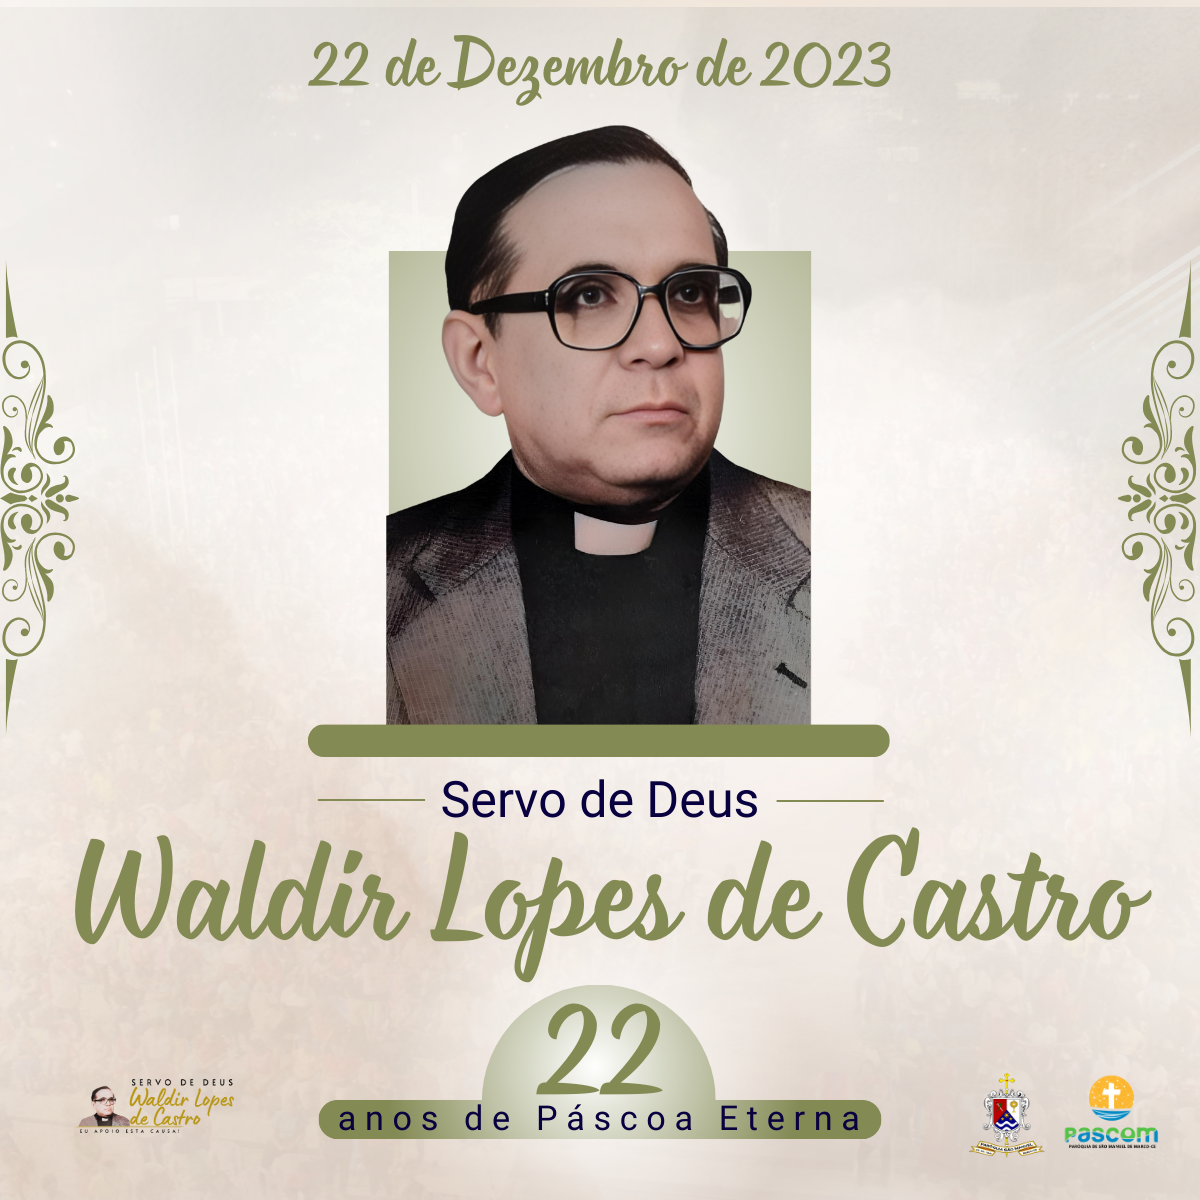 Mons. Waldir completa 22 anos de Páscoa Eterna. Créditos: Paróquia de São Manuel